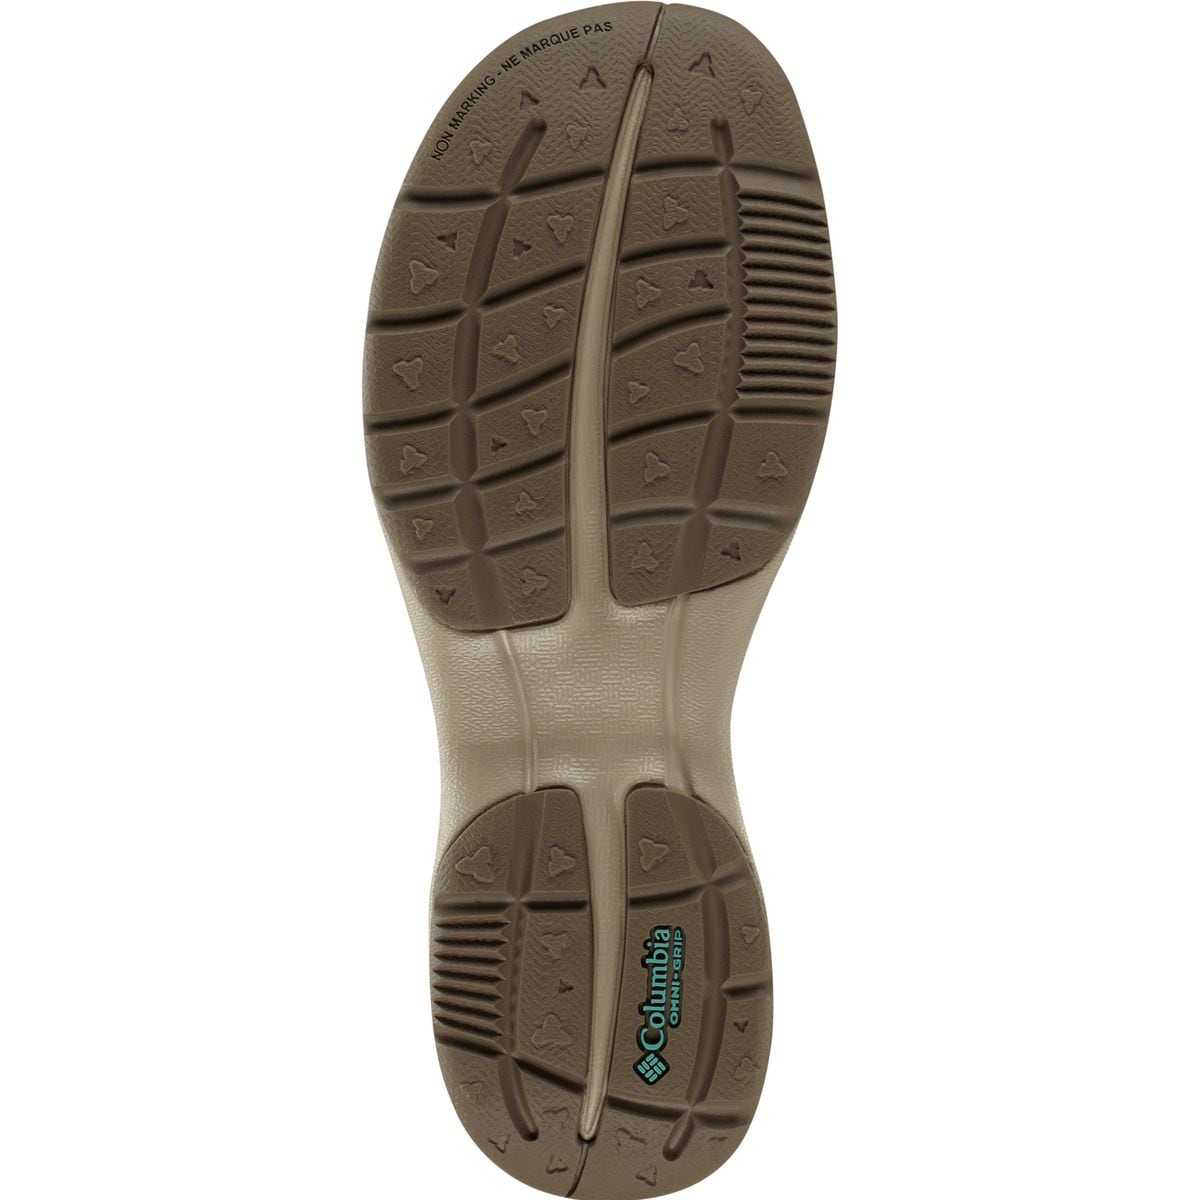 Kea Vent Sandal - Women's - Footwear